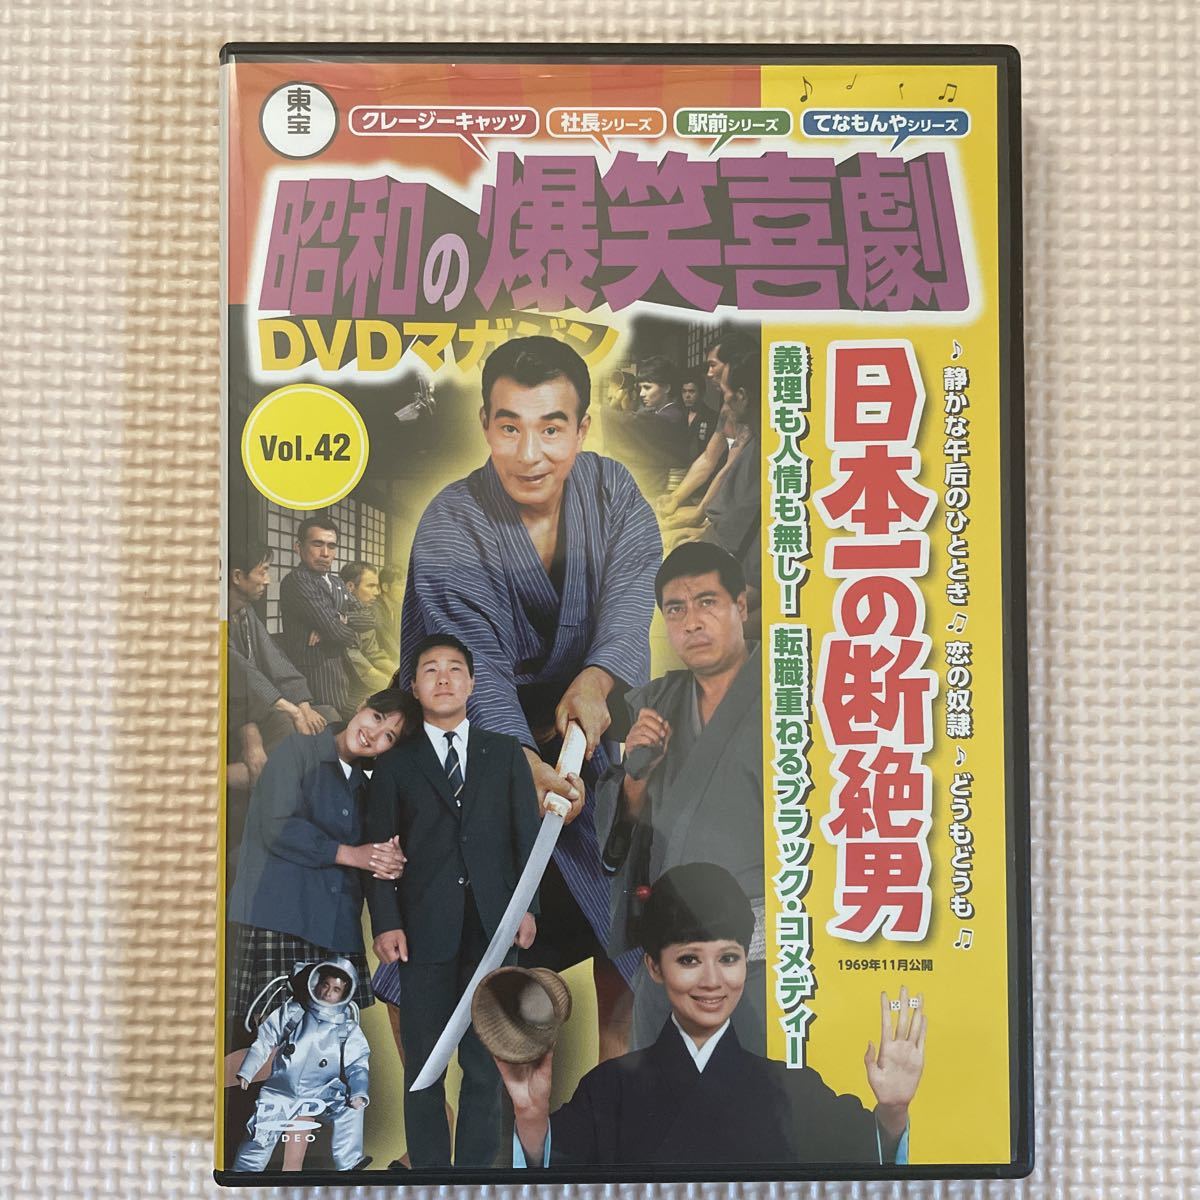 Yahoo!オークション -「日本一の断絶男」(DVD) の落札相場・落札価格